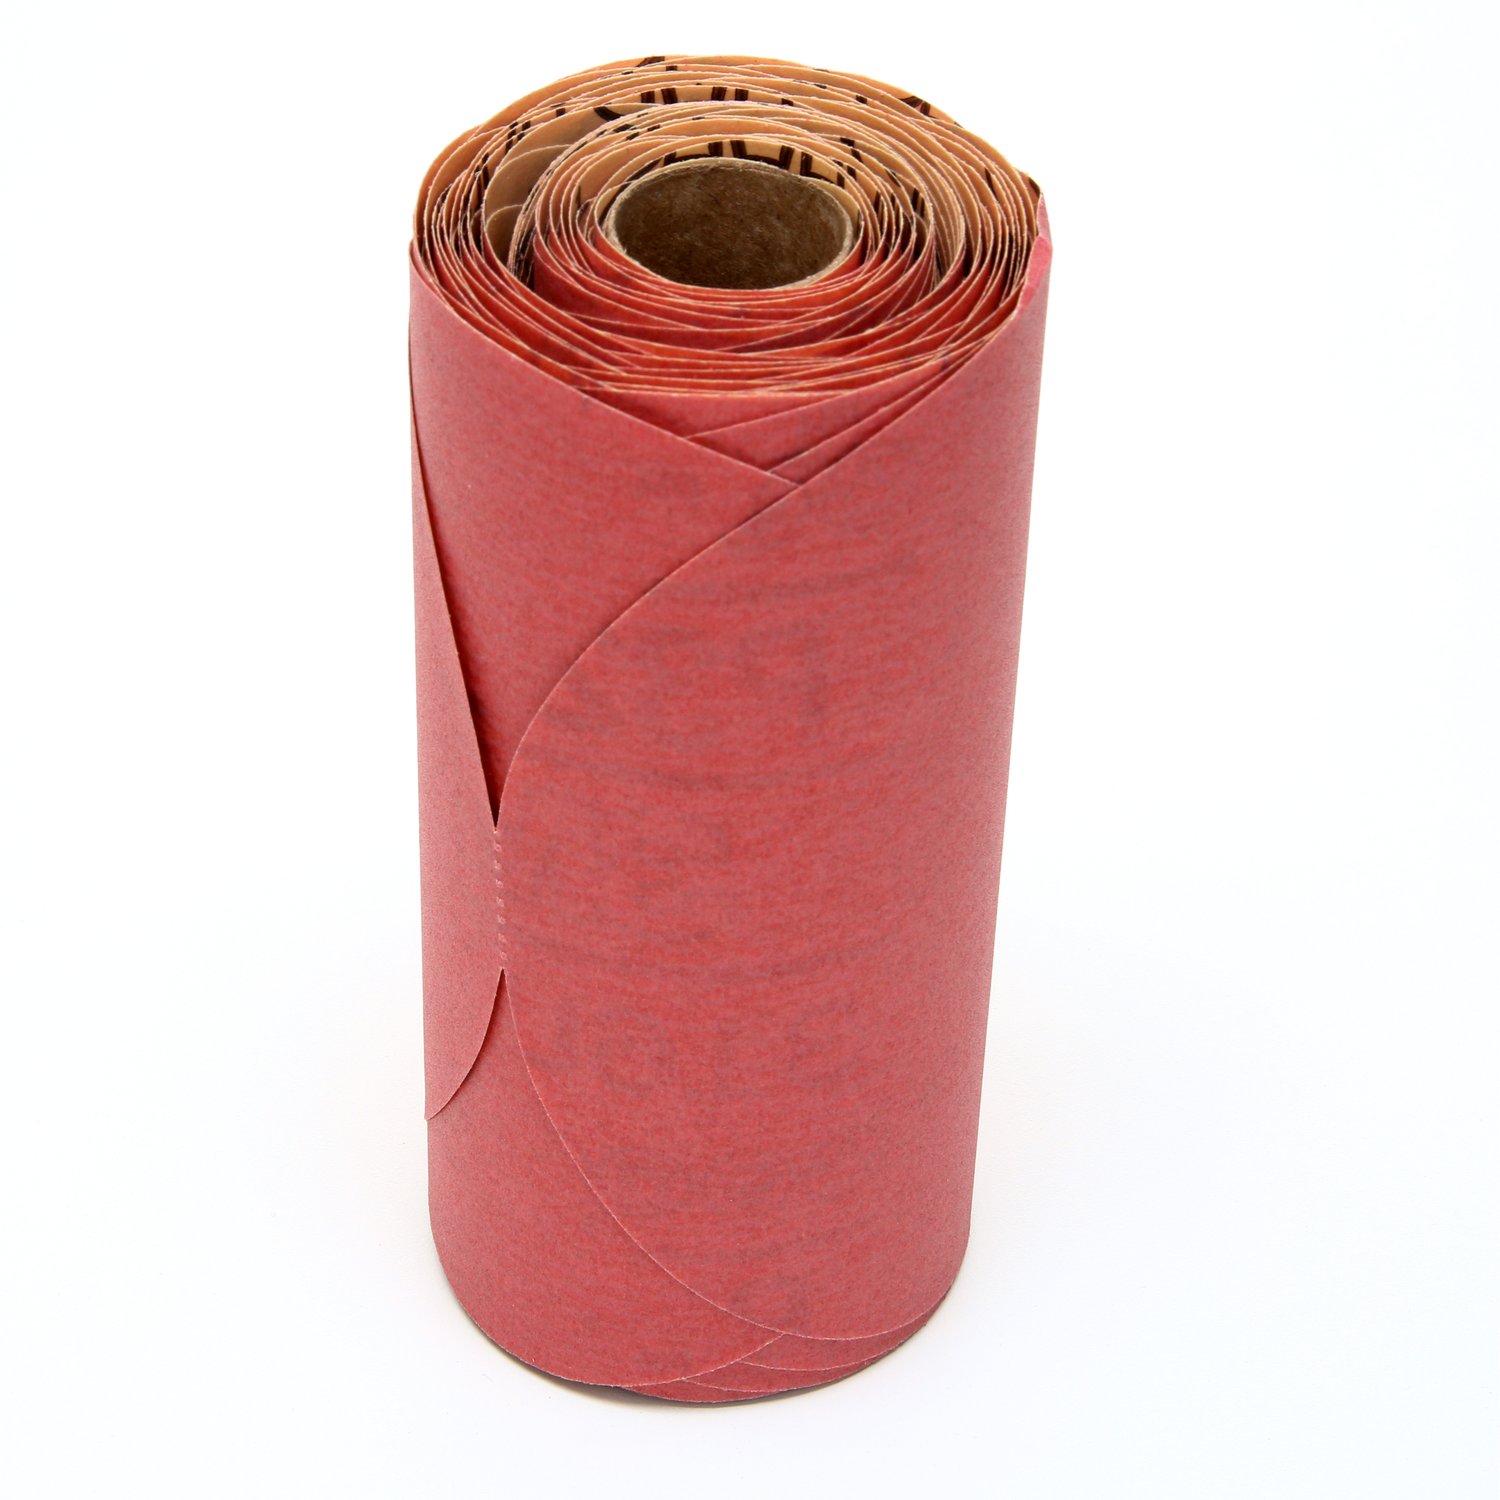 7000119766 - 3M Red Abrasive Stikit Disc, 01109, 6 in, P320 grade, 100 discs per
roll, 6 rolls per case